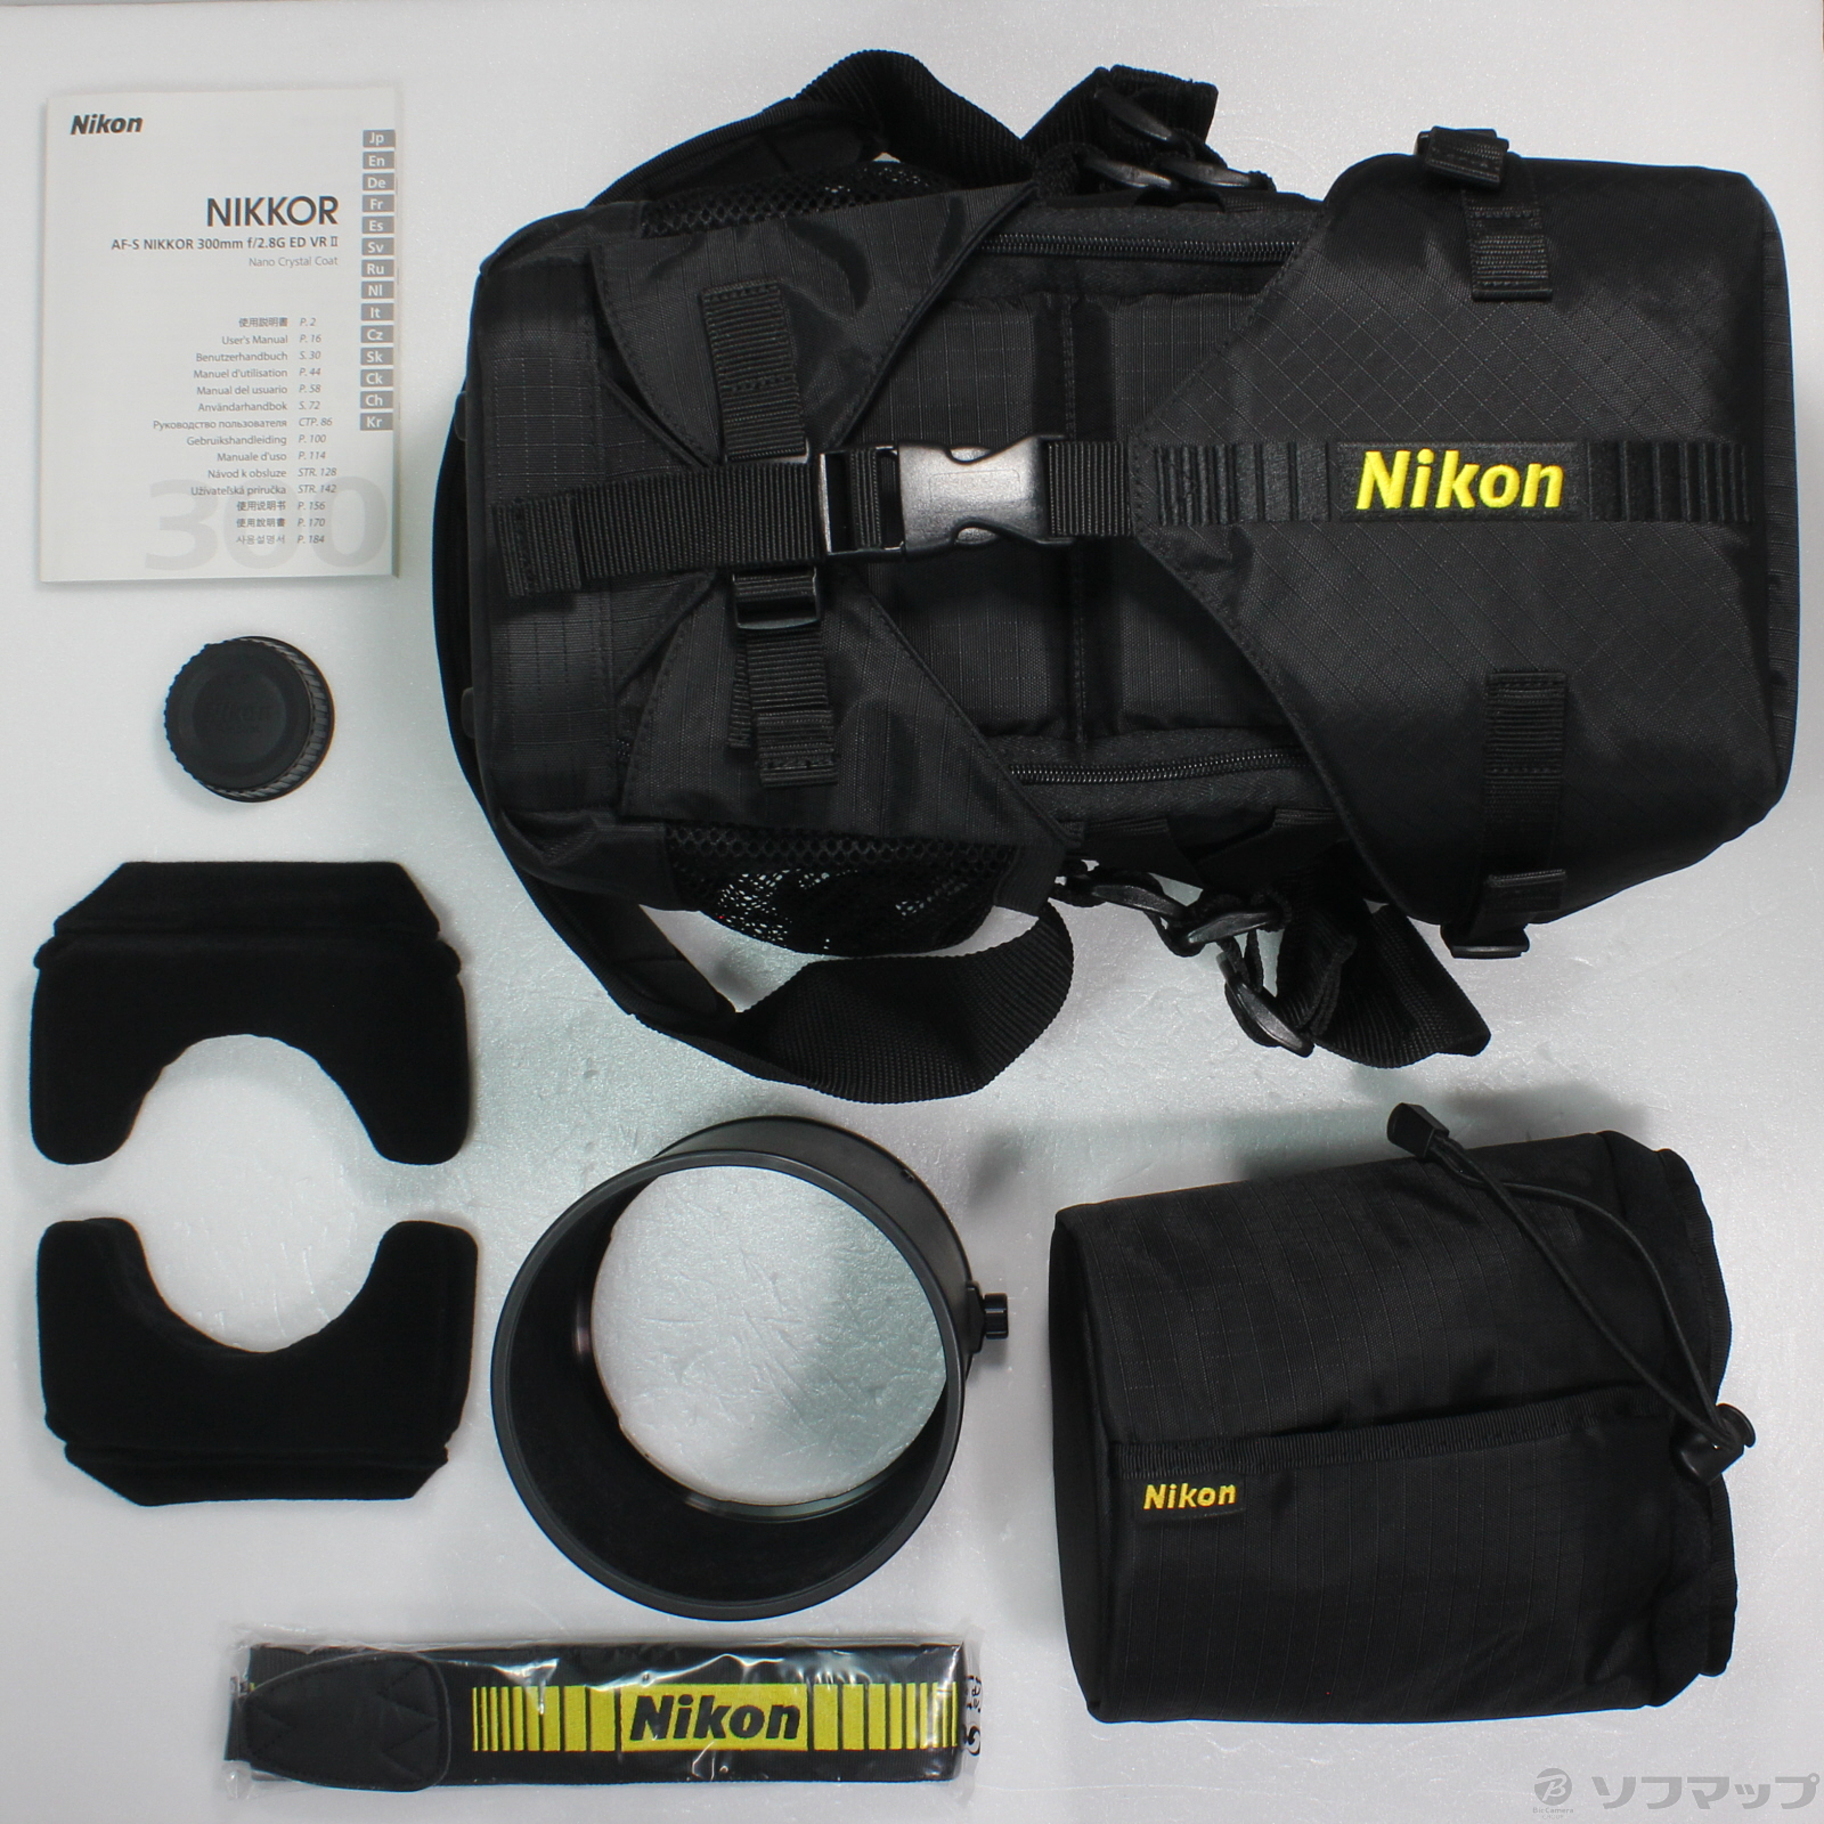 ニコンAF-S NIKKOR 300mm F2.8G ED VR IIケース付き正常レンズ内の状態